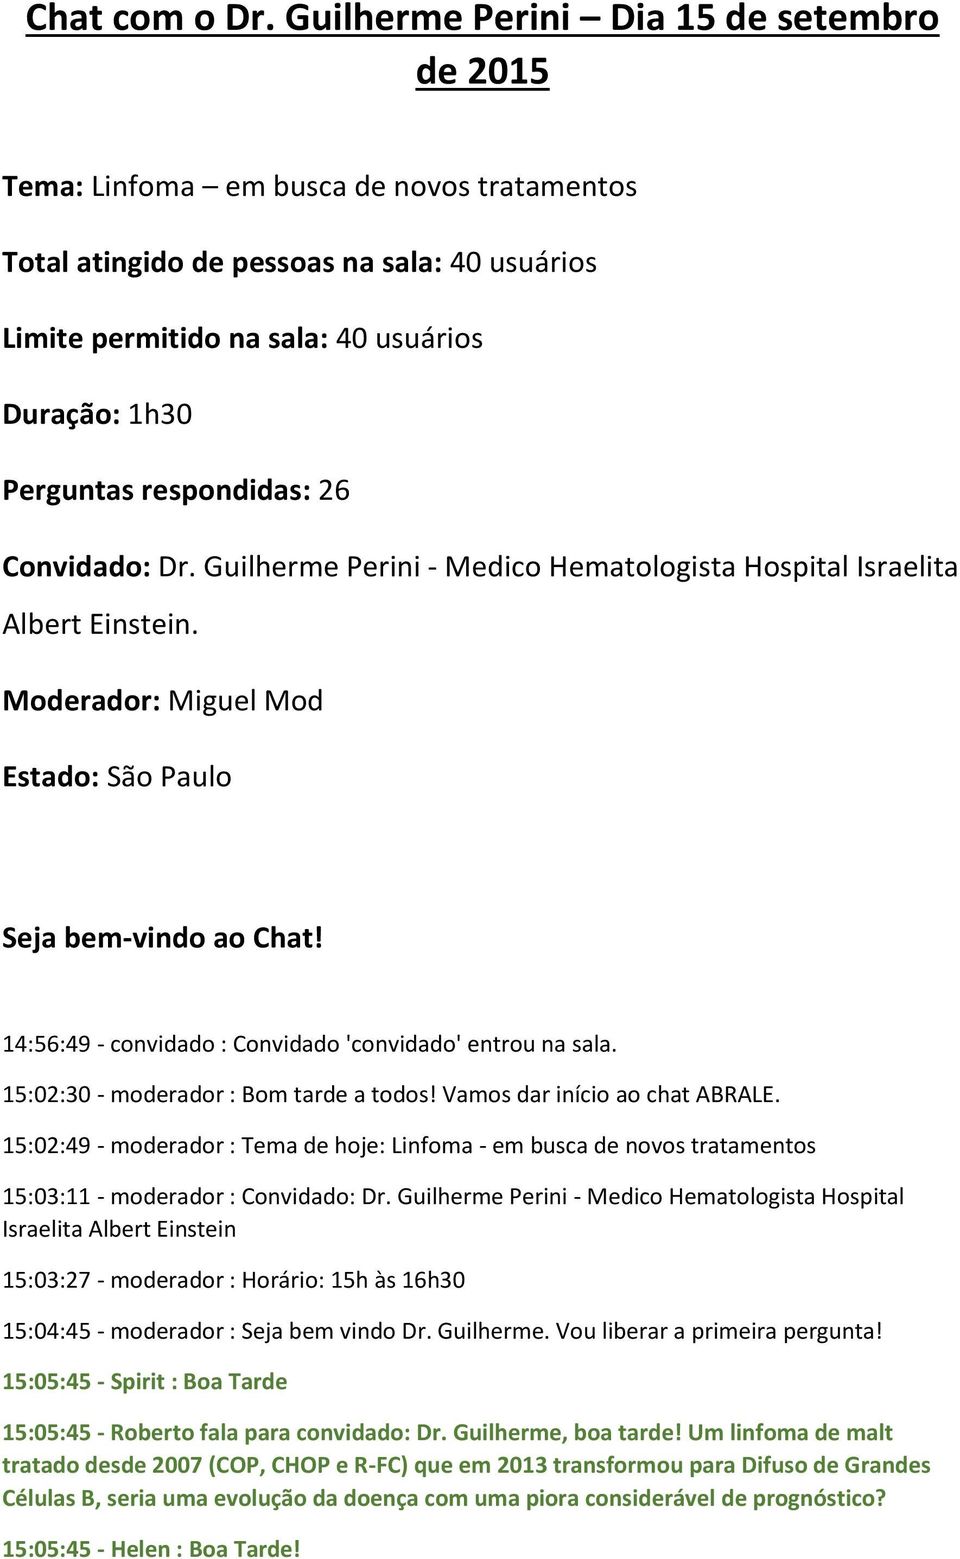 respondidas: 26 Convidado: Dr. Guilherme Perini - Medico Hematologista Hospital Israelita Albert Einstein. Moderador: Miguel Mod Estado: São Paulo Seja bem-vindo ao Chat!